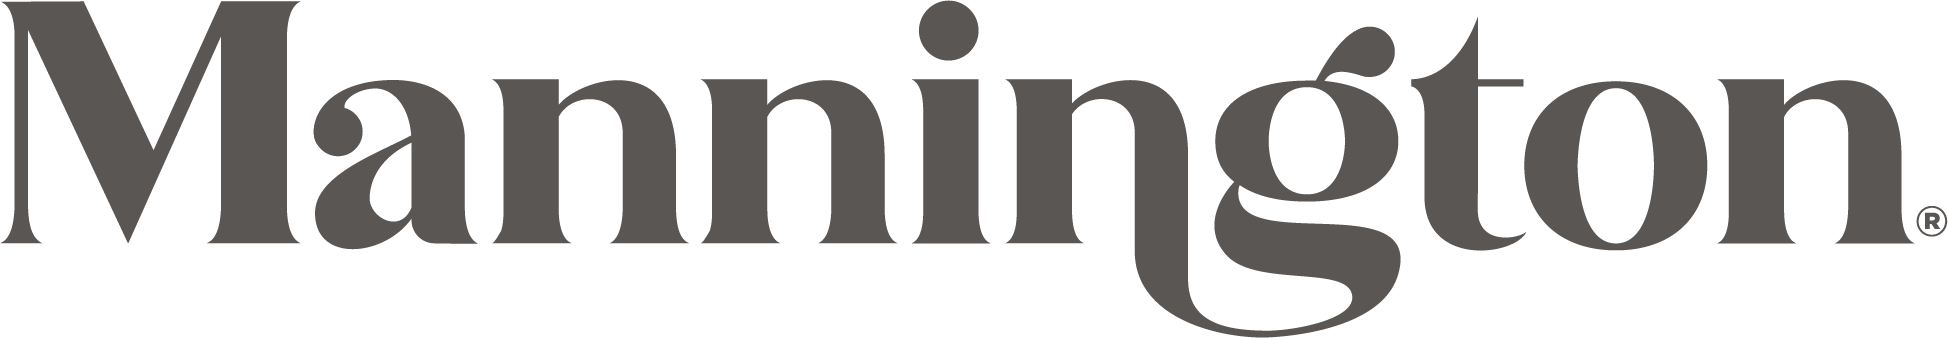 manningtong-logo